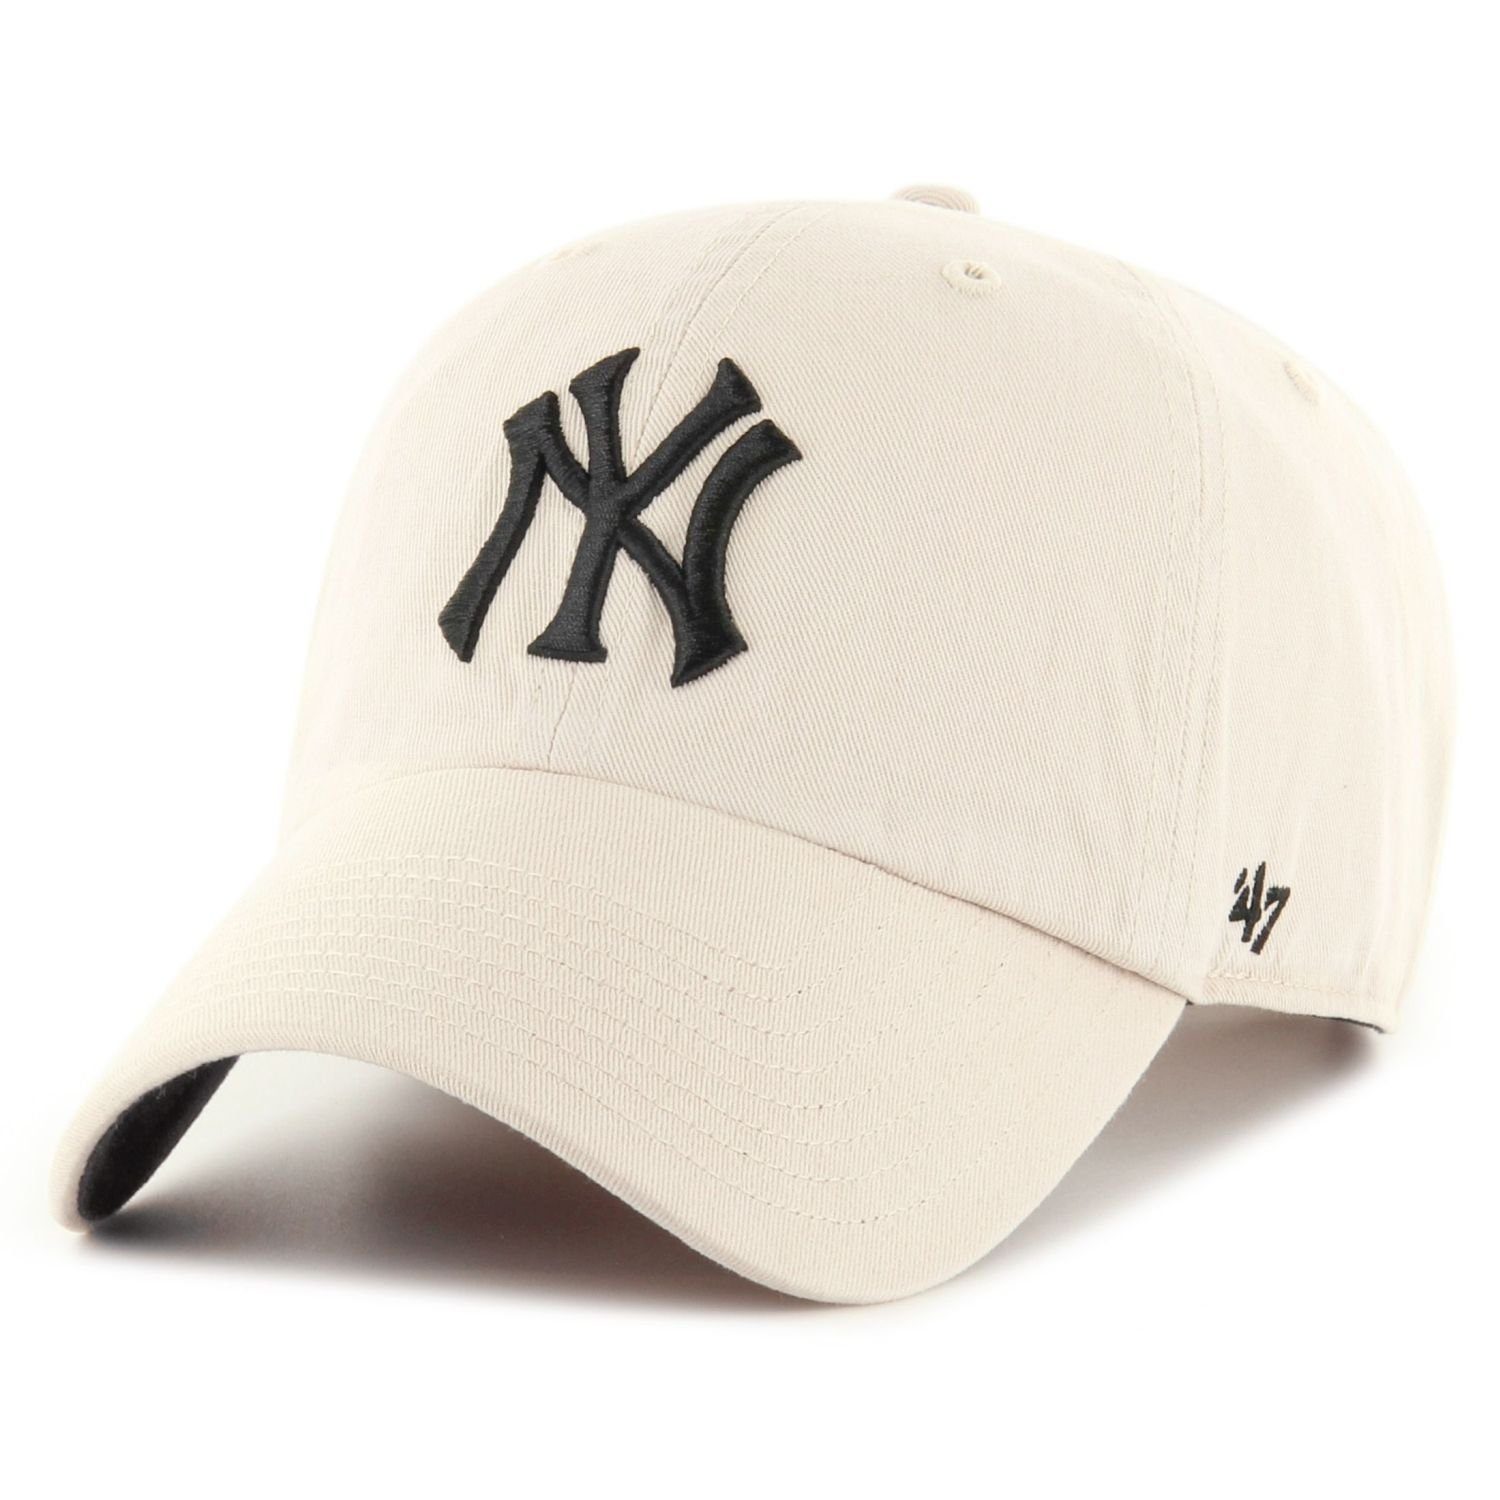 x27;47 Brand Baseball Cap New UP CLEAN bone Ballpark Yankees York